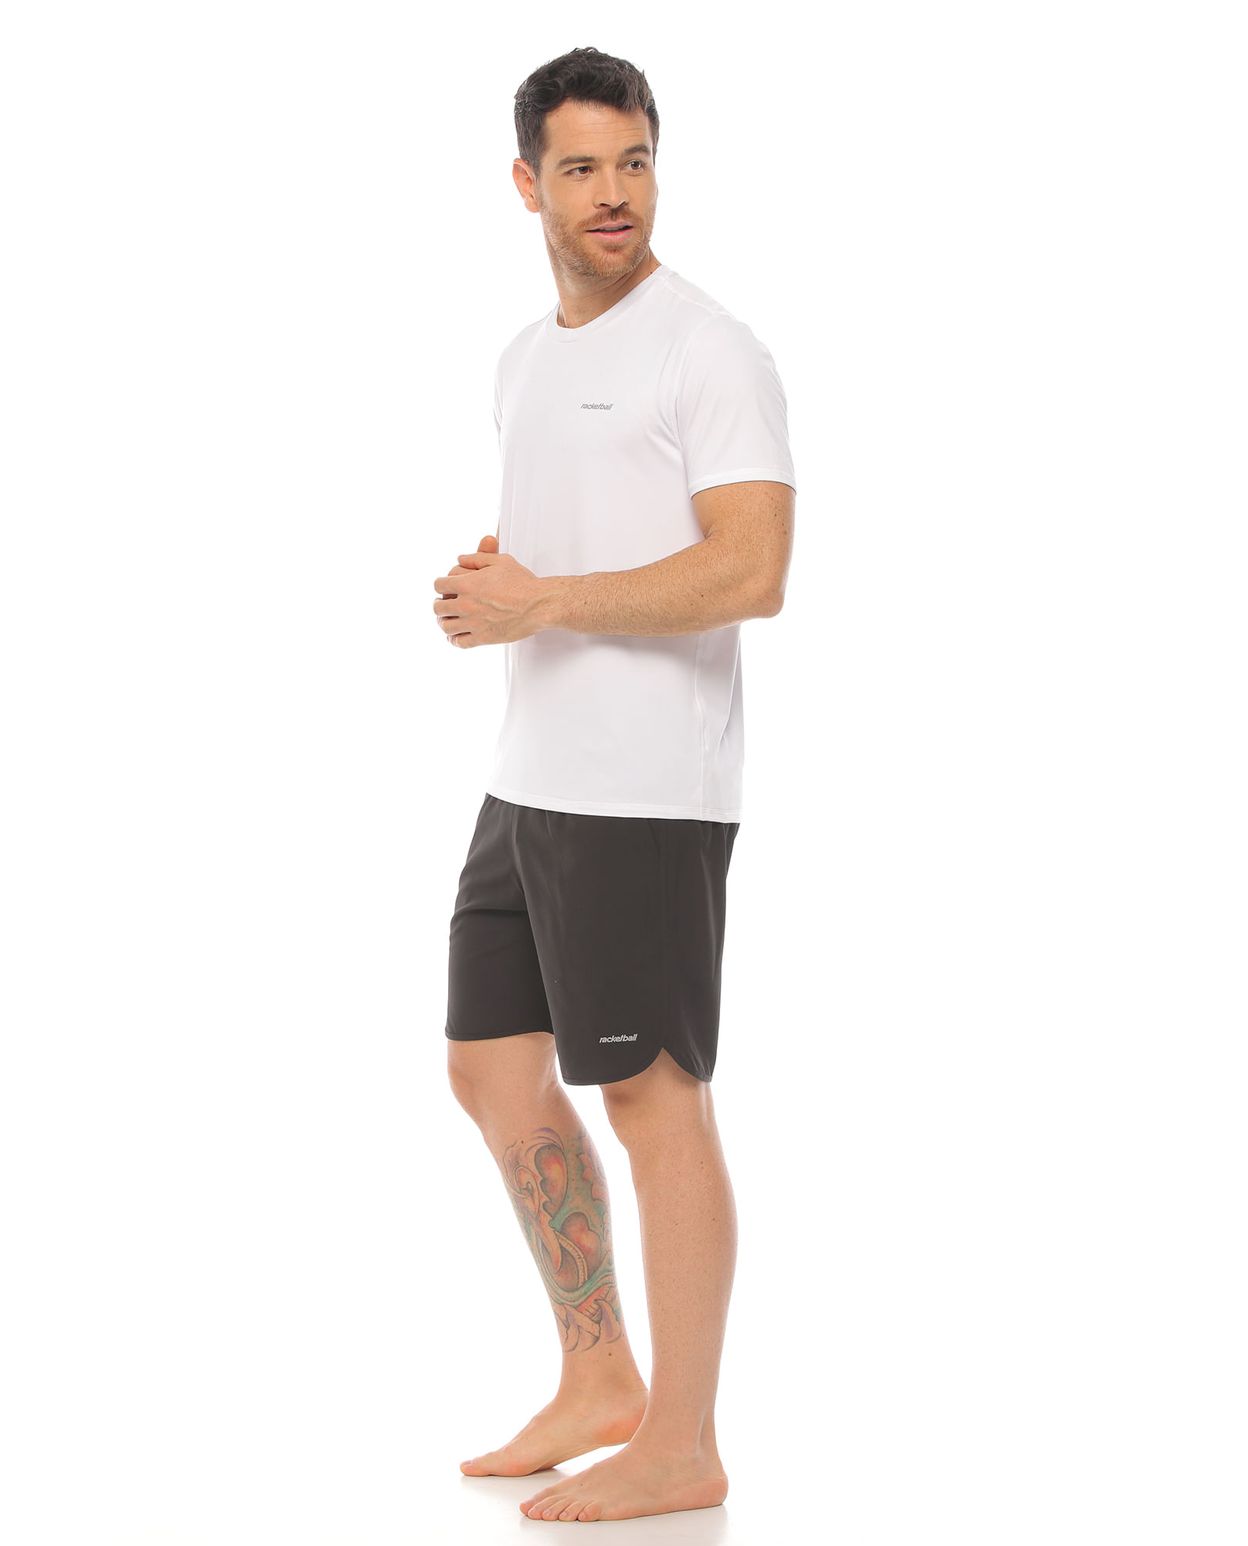 modelo con pantaloneta deportiva color negro y camiseta deportiva color blanco cuerpo completo parte lateral derecha